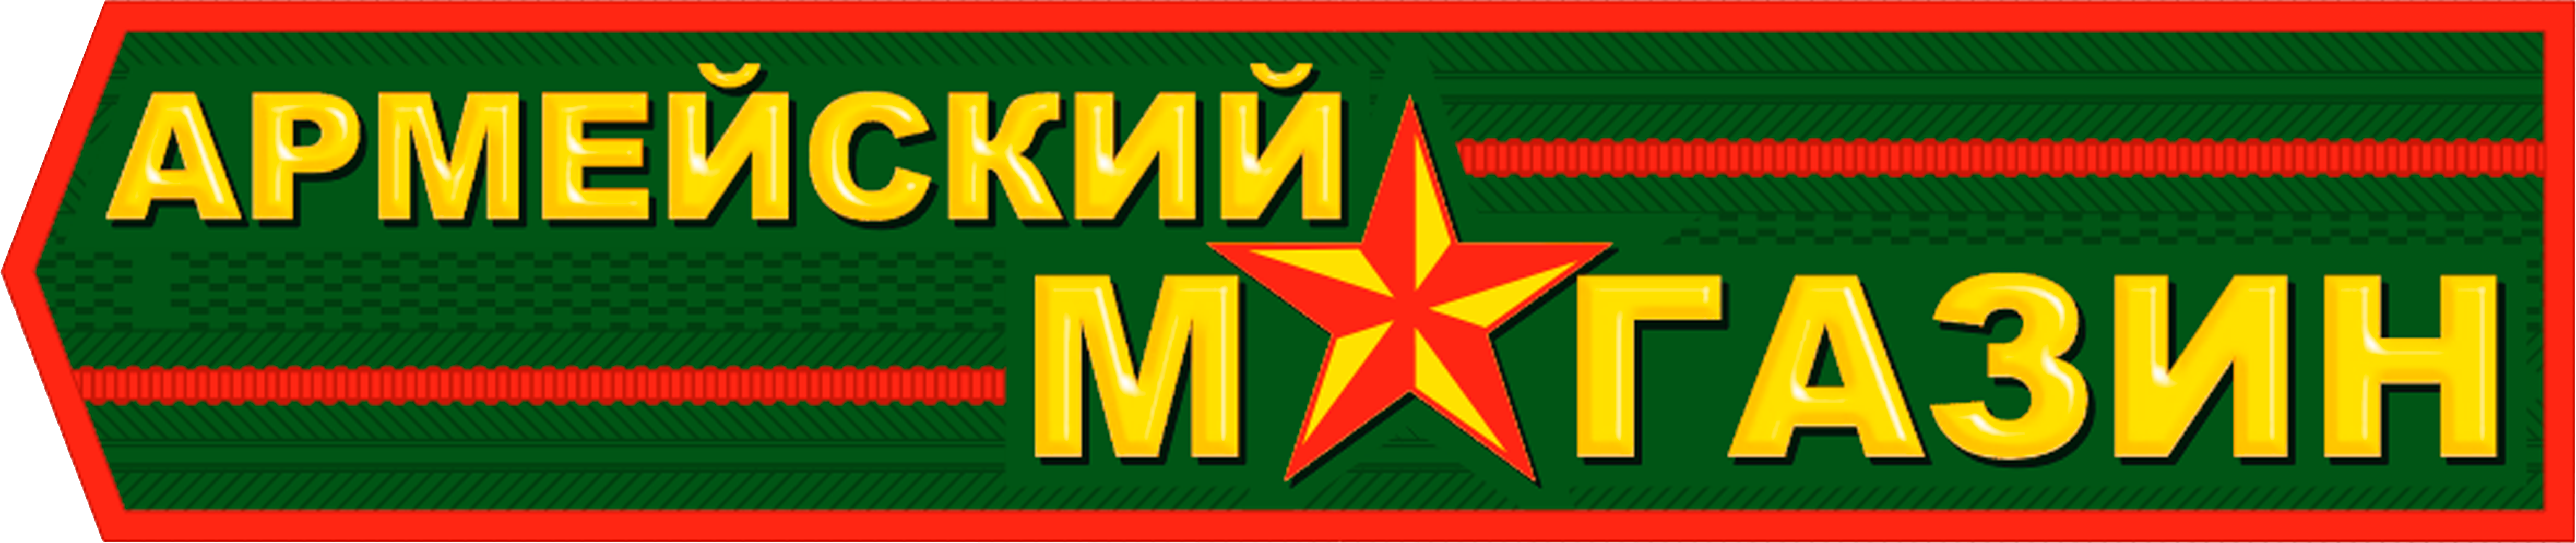 Army22.ru - армейский магазин